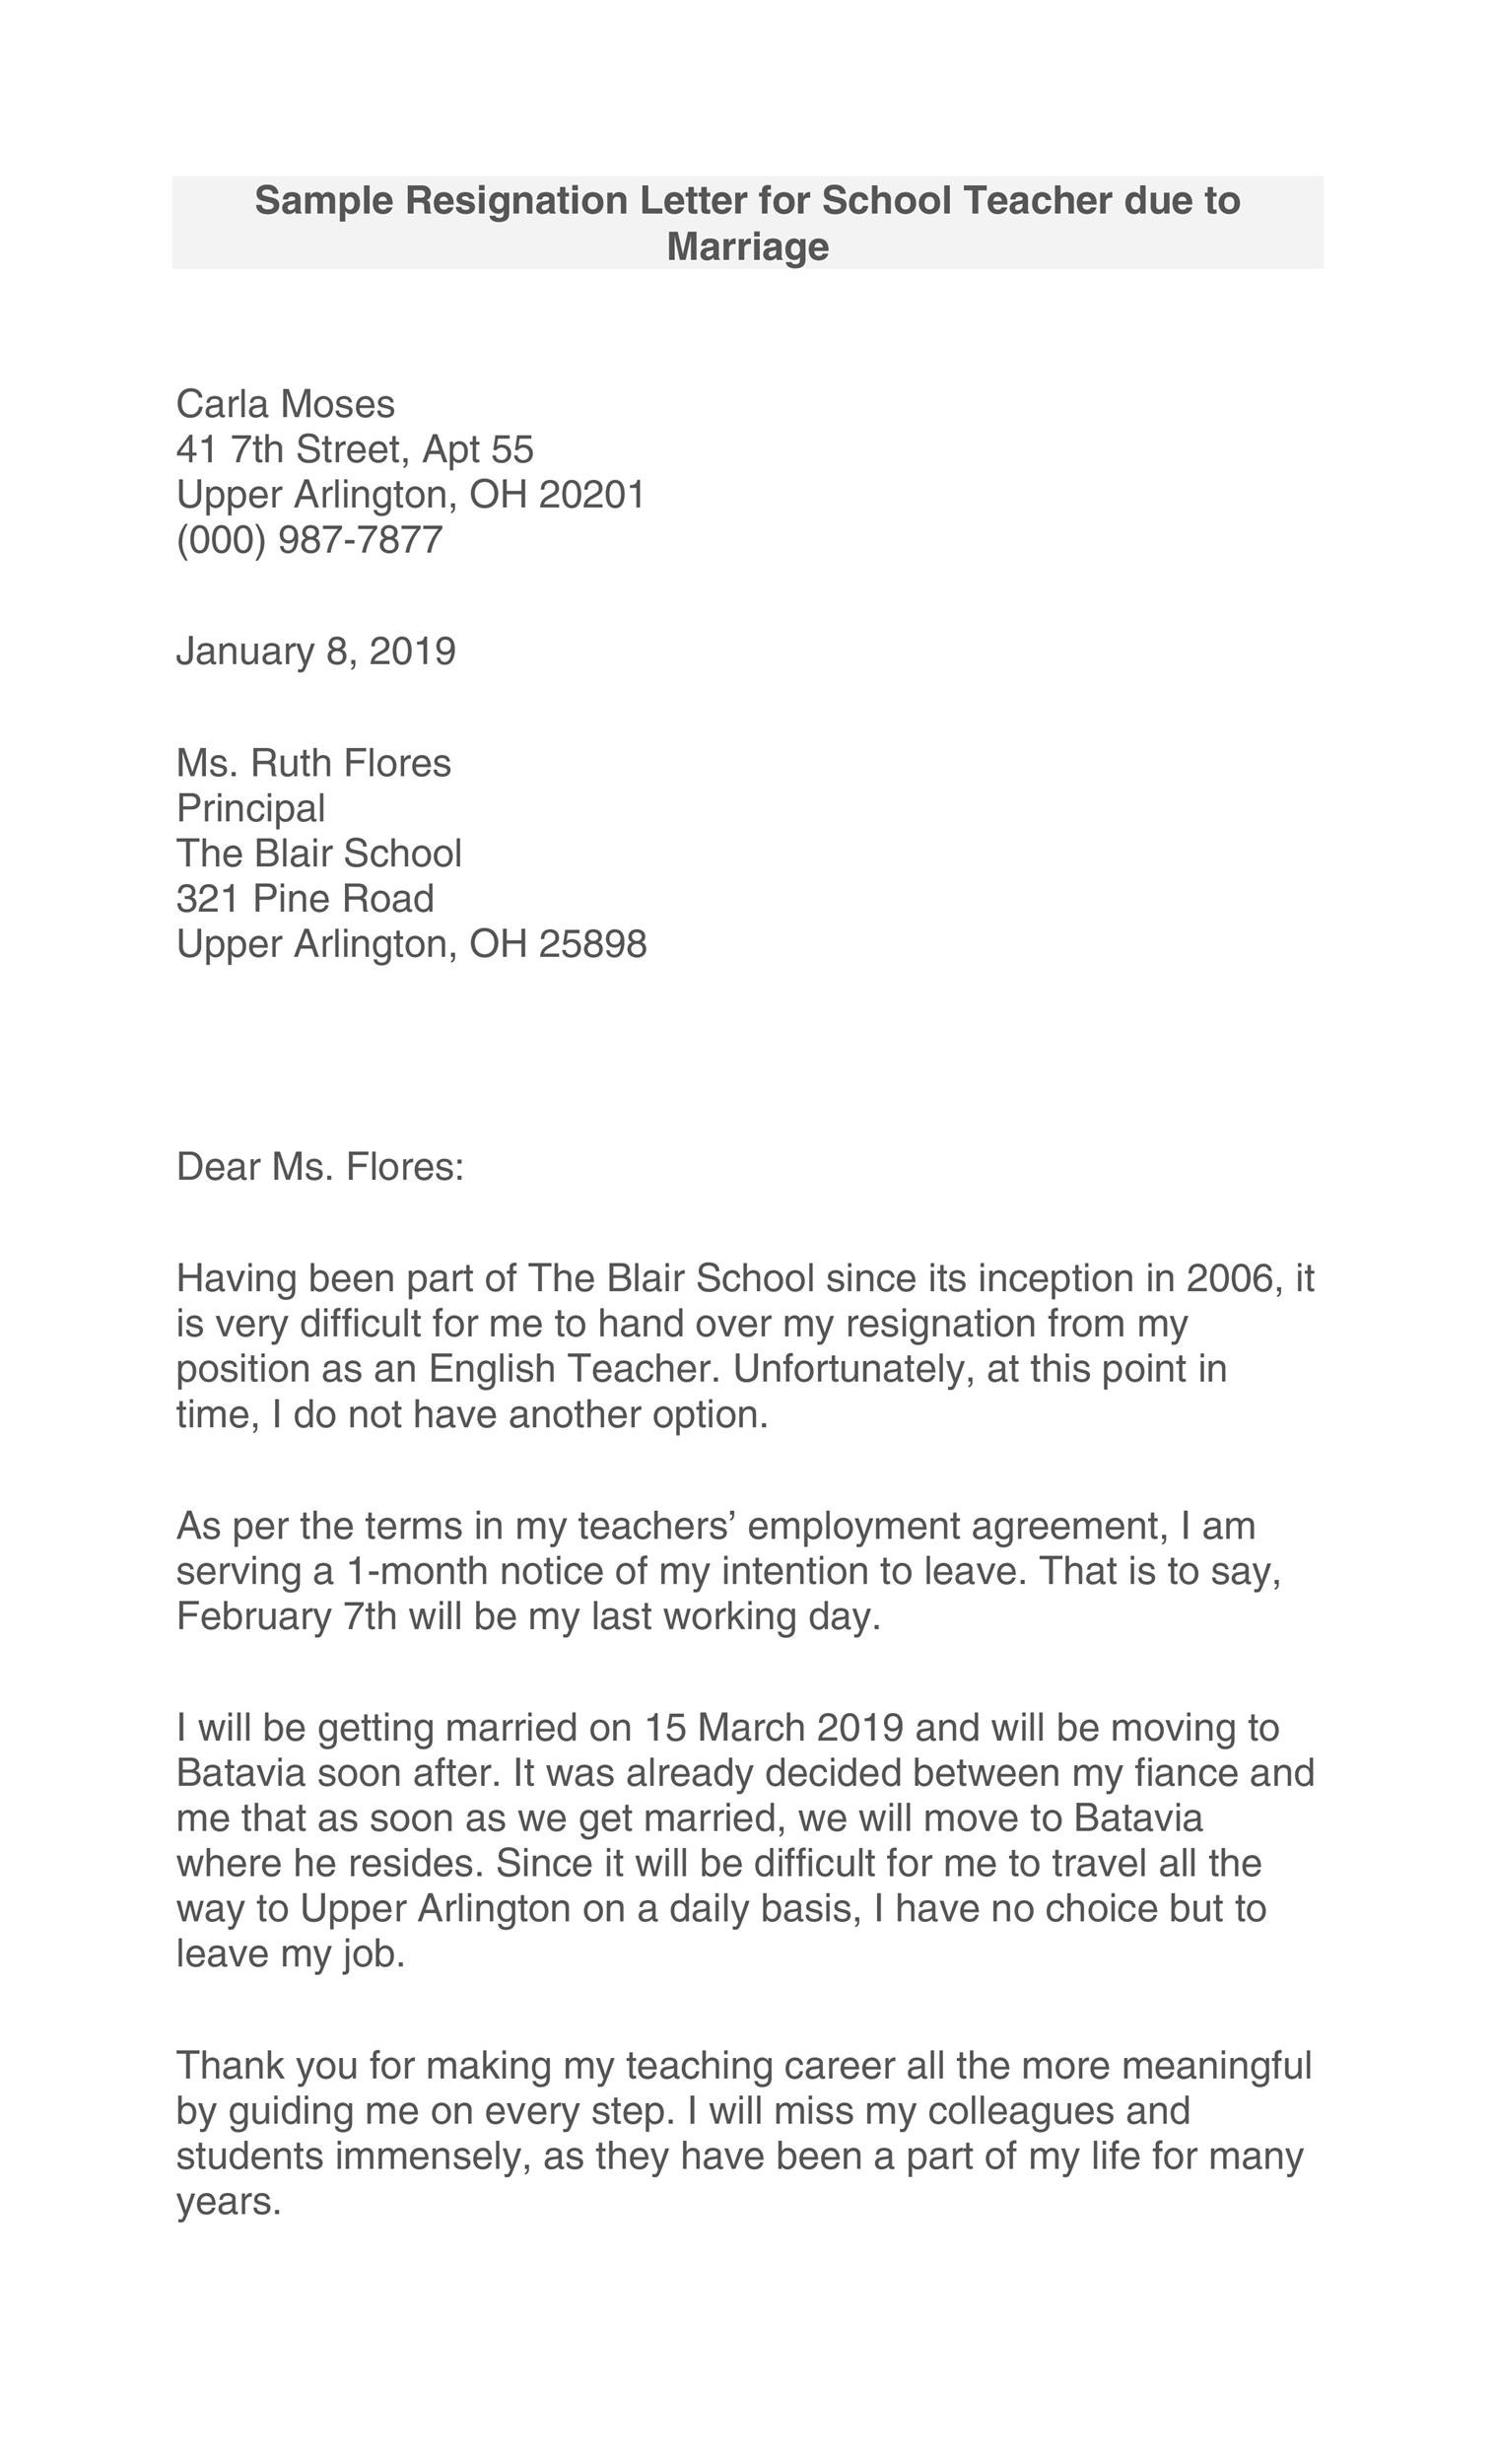 Sample Resignation Letter For Teacher from templatelab.com